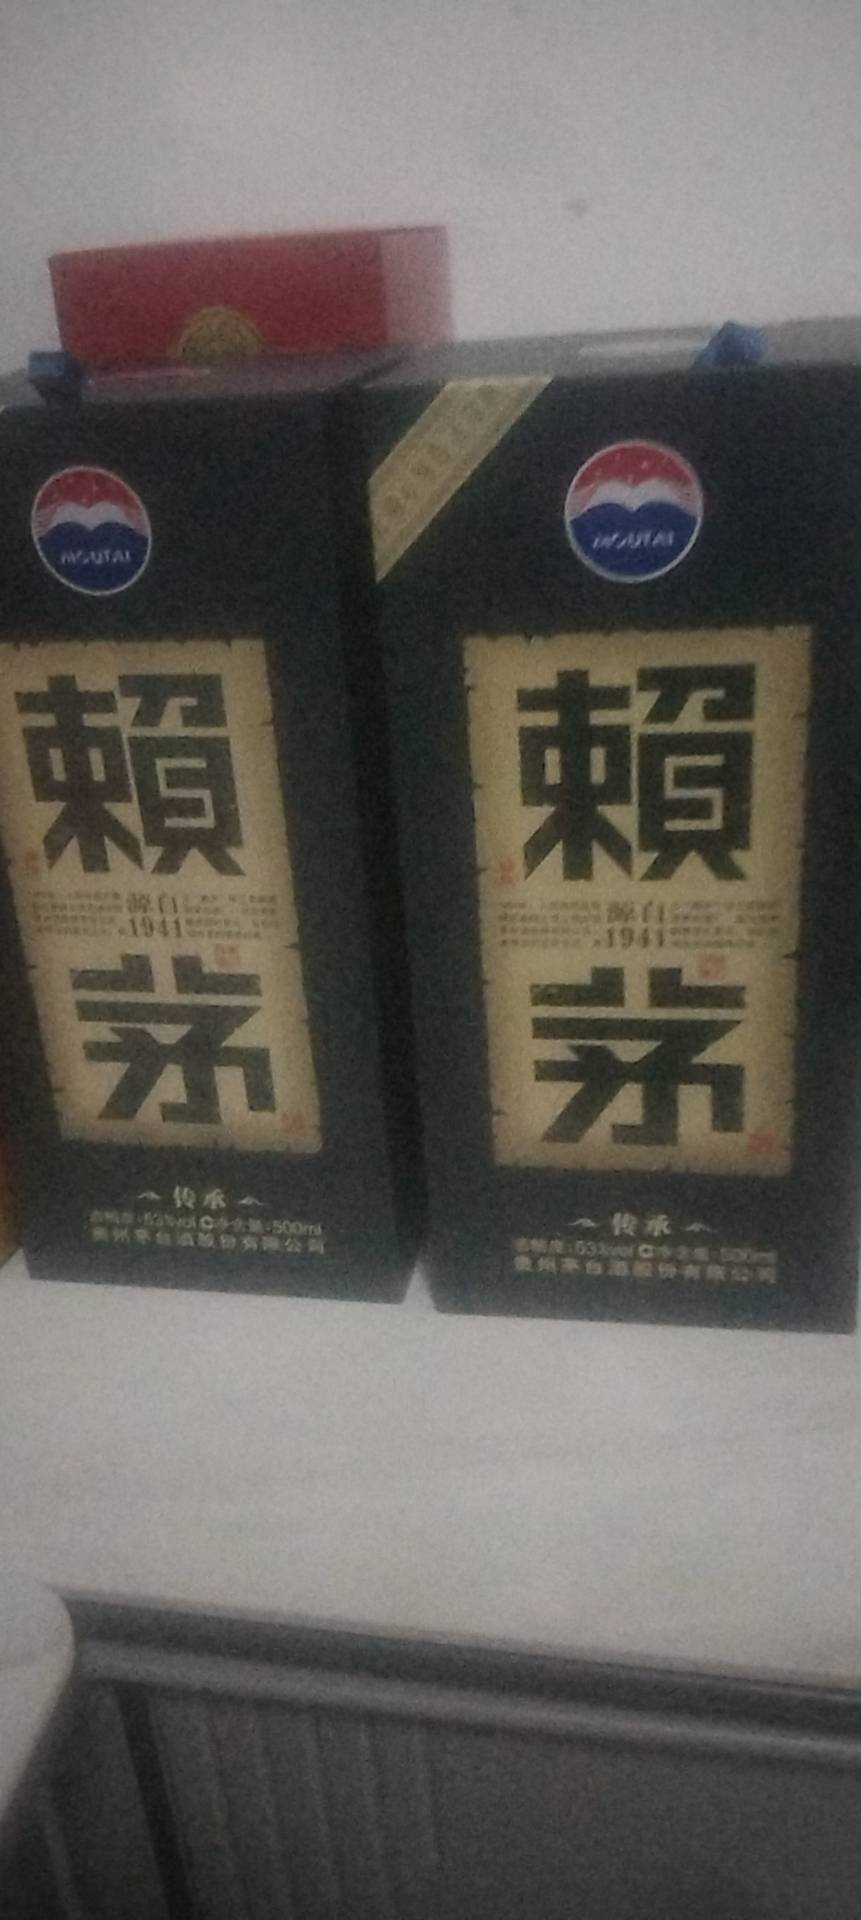 贵州 茅台 赖茅 传承蓝 酱香型 白酒 53度 500ml/盒×2 盒装 纯粮食酒(賴茅)晒单图